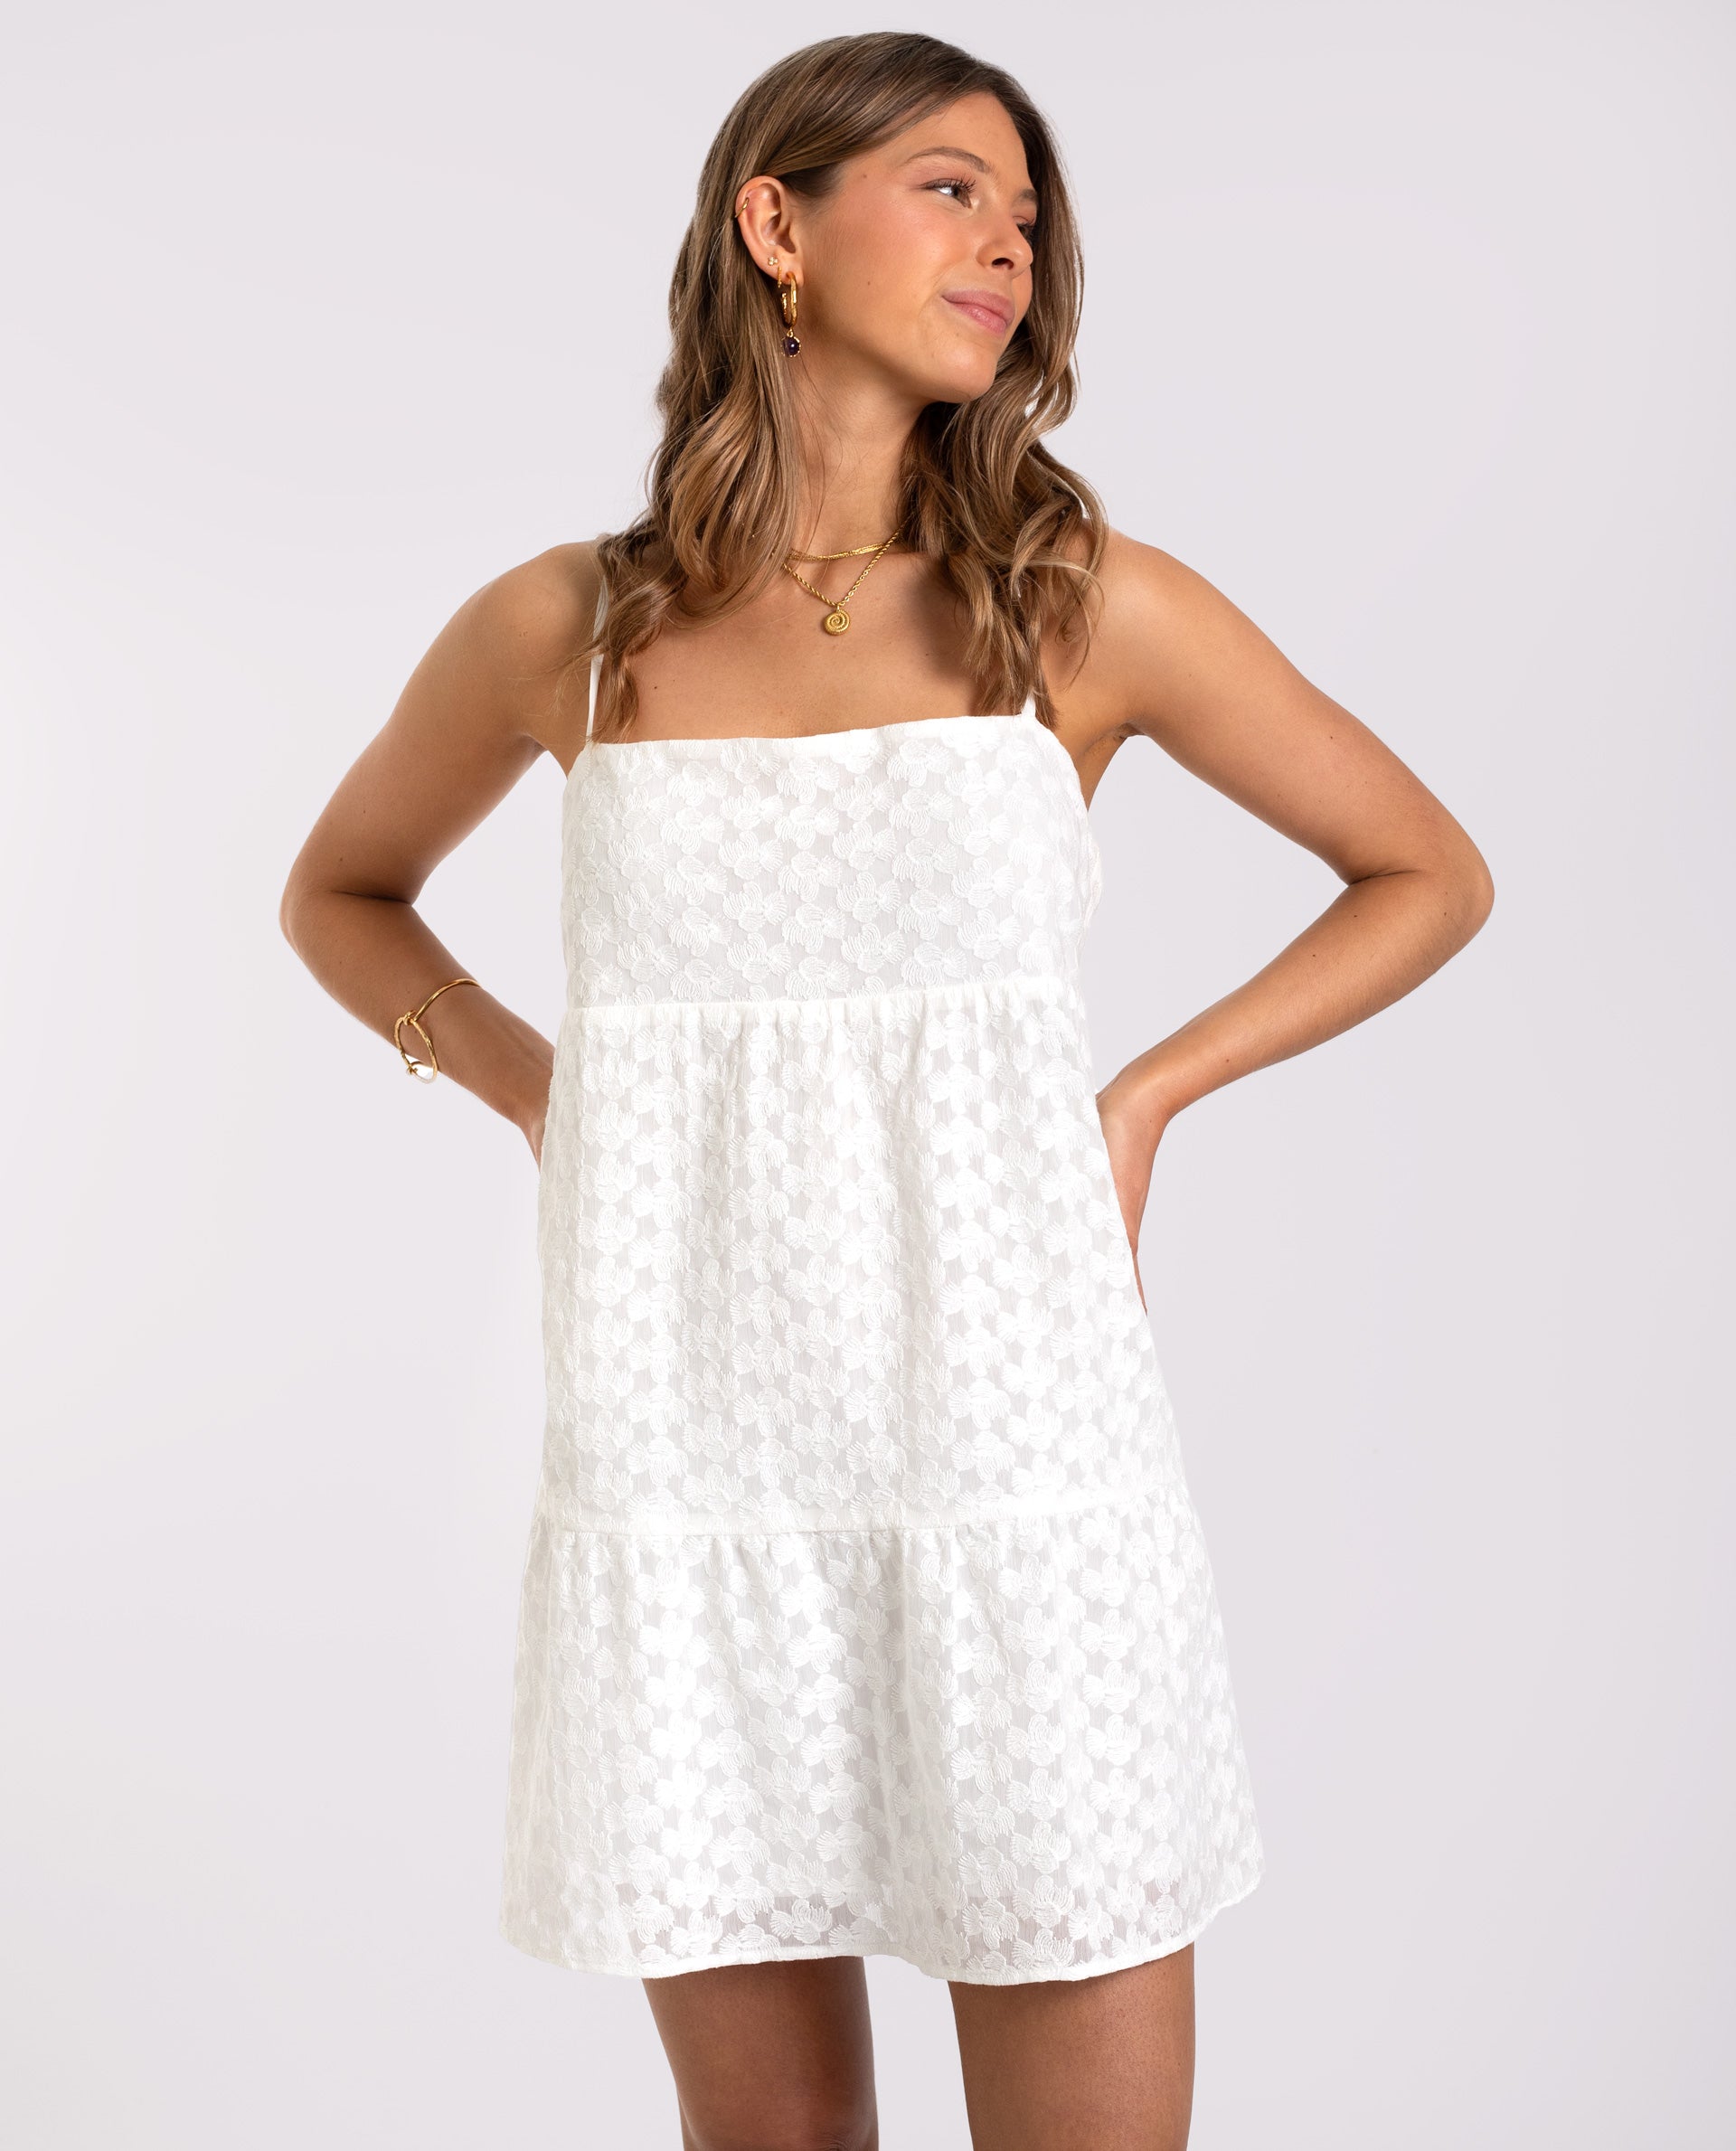 MATILDE DRESS - WHITE